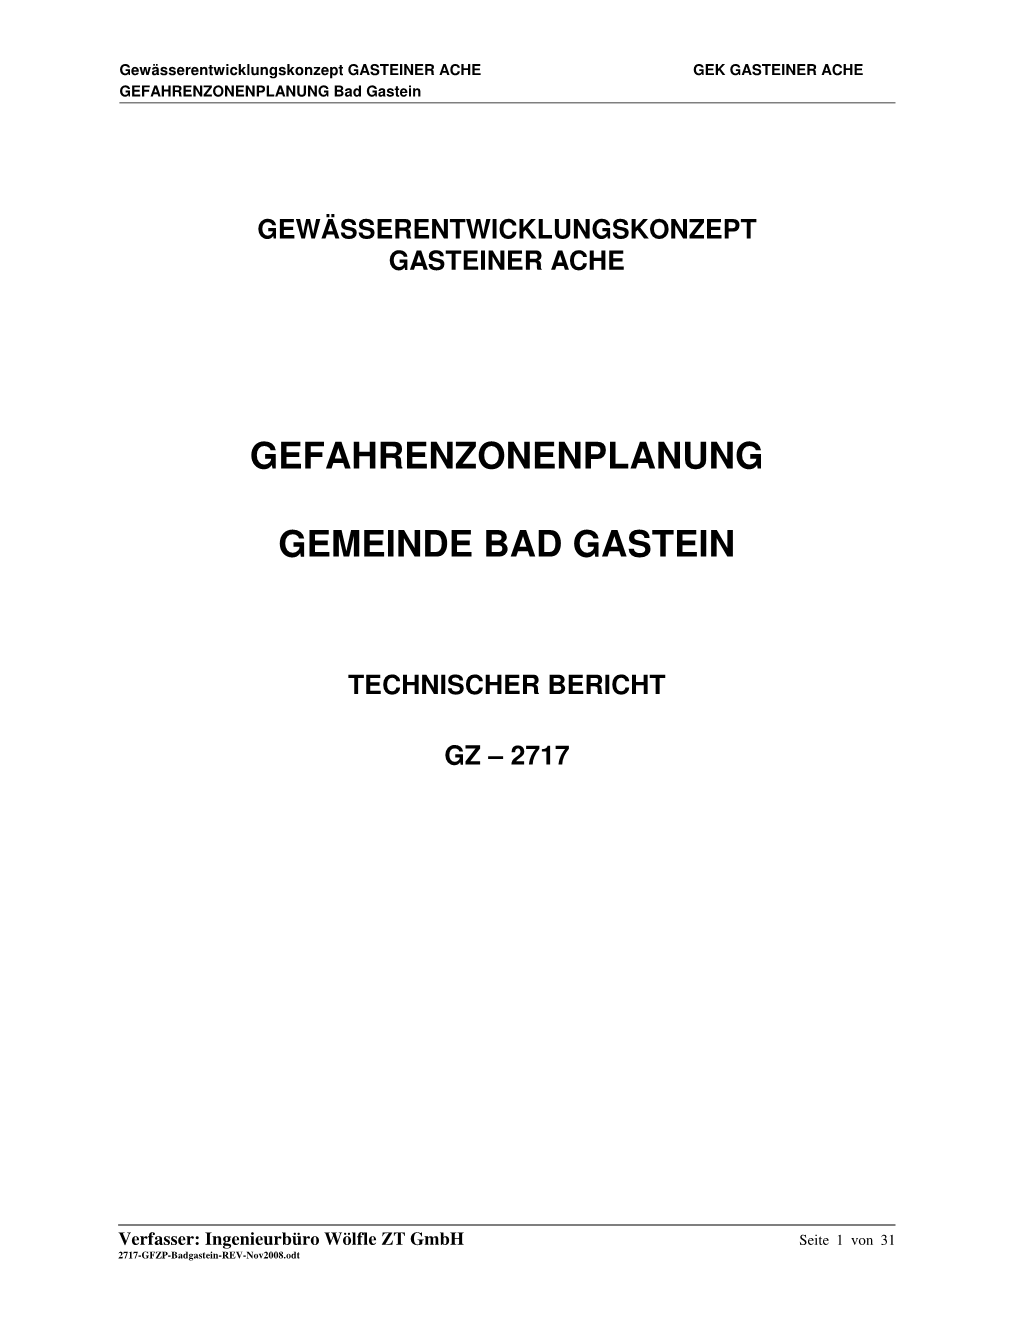 Gefahrenzonenplanung Gemeinde Bad Gastein